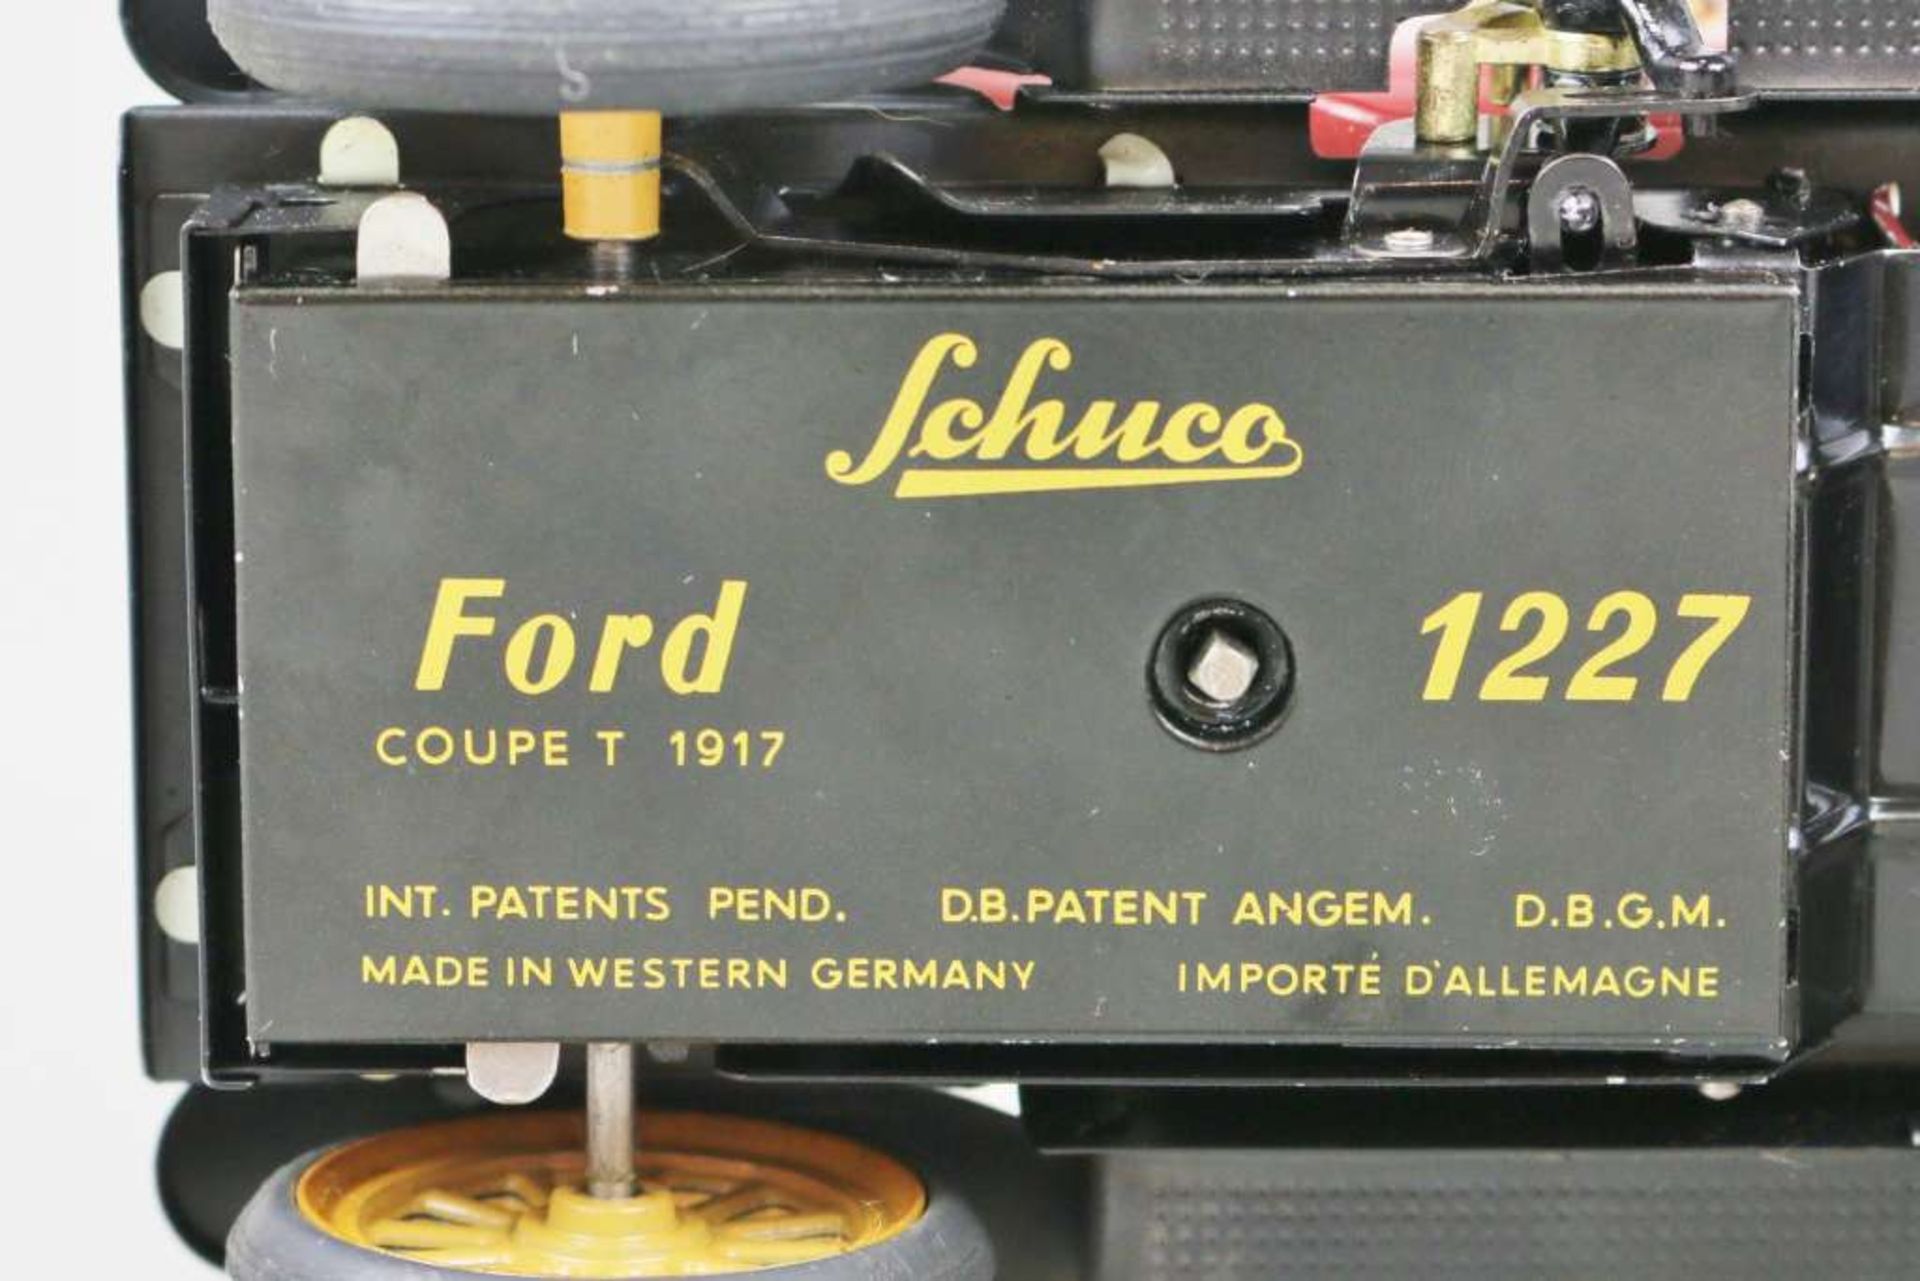 Schuco, 2 Modelautos, Ford 1227 und Mercer 1225, lackierte Blechausführung mit Uhrwerkantrieb, L.: - Bild 4 aus 4